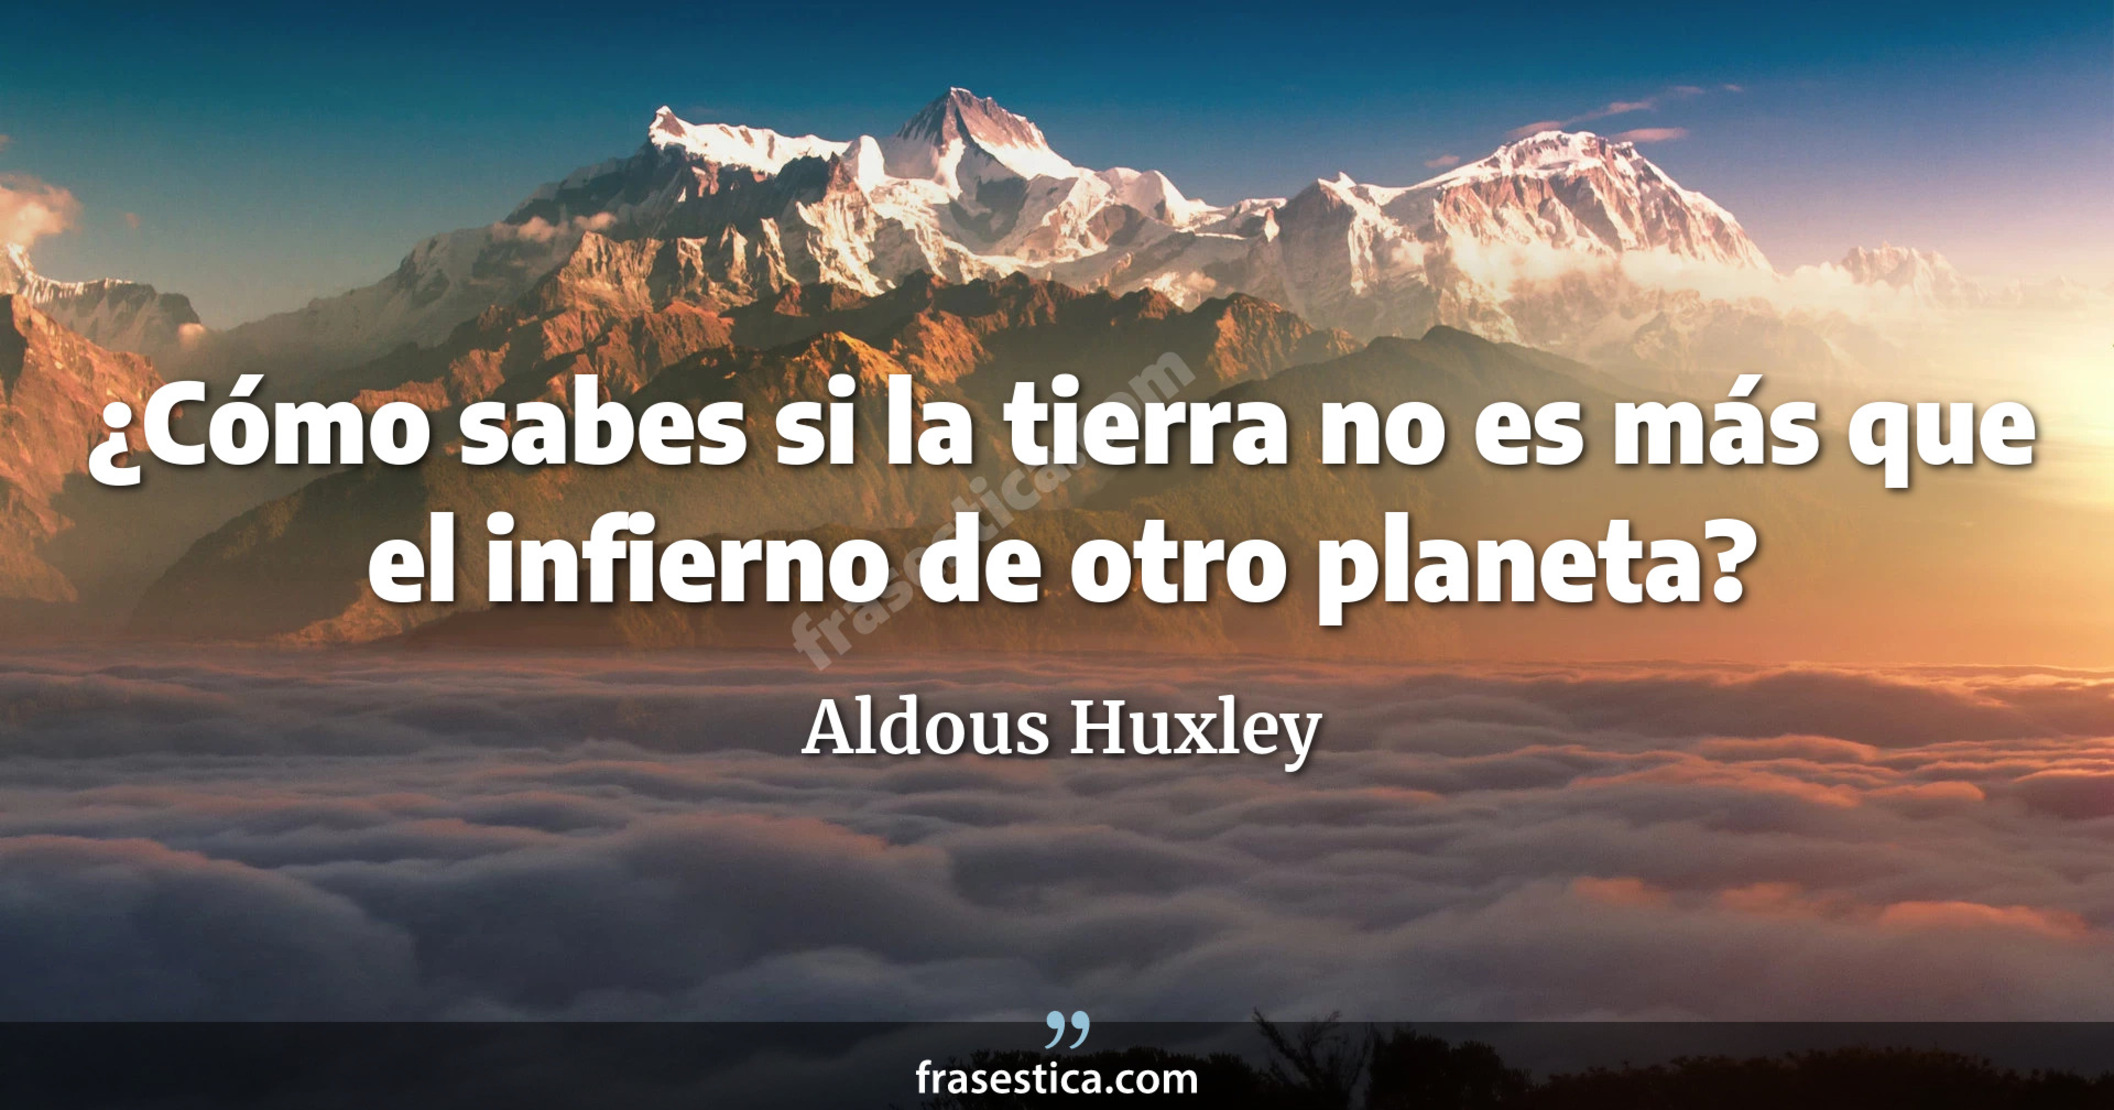 ¿Cómo sabes si la tierra no es más que el infierno de otro planeta? - Aldous Huxley